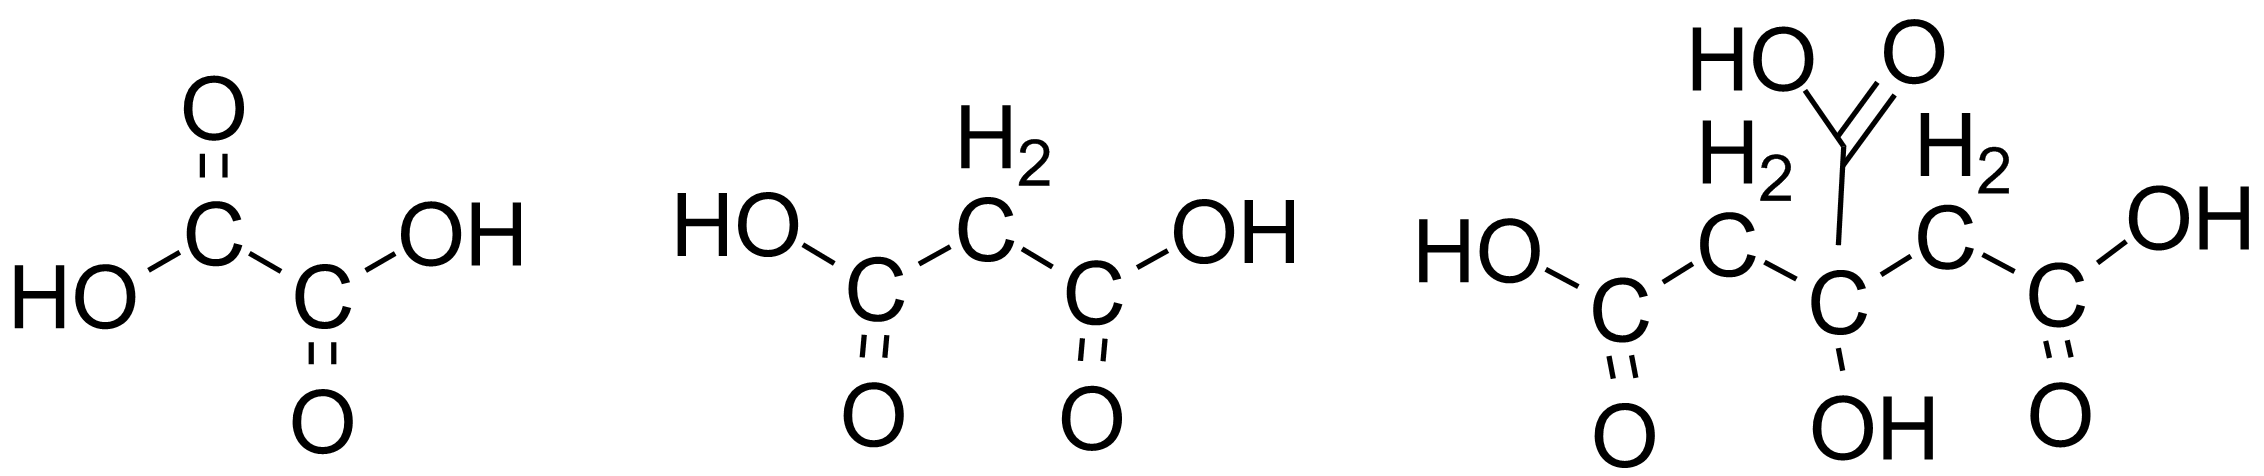 Карбоновые кислоты: муравьиная, уксусная и другие | ChemiDay.com